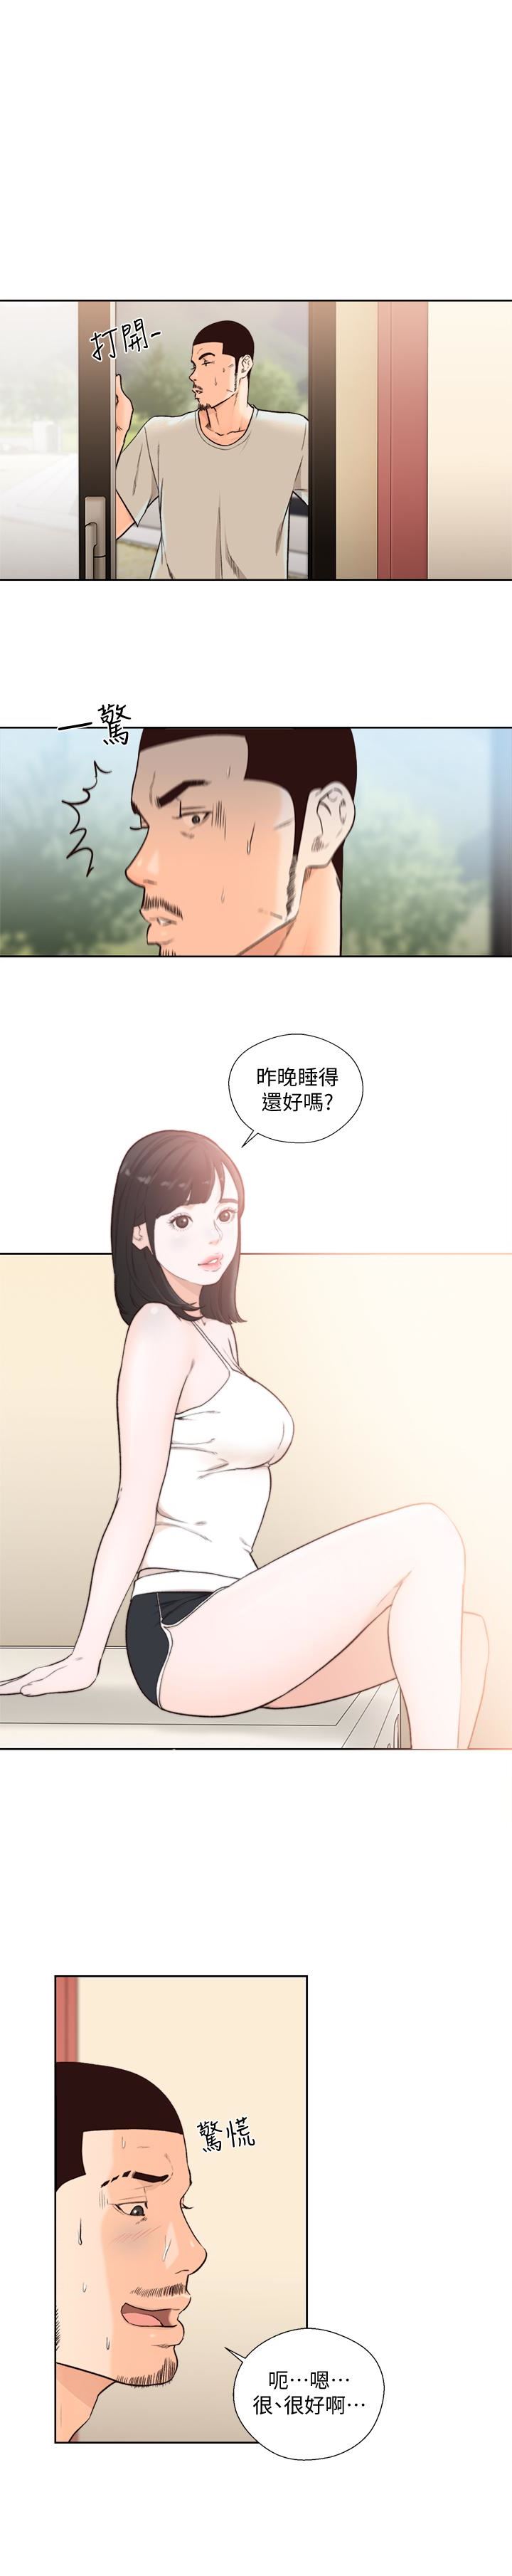 韩国污漫画 解禁:初始的快感 最终话-幸福的方法 1